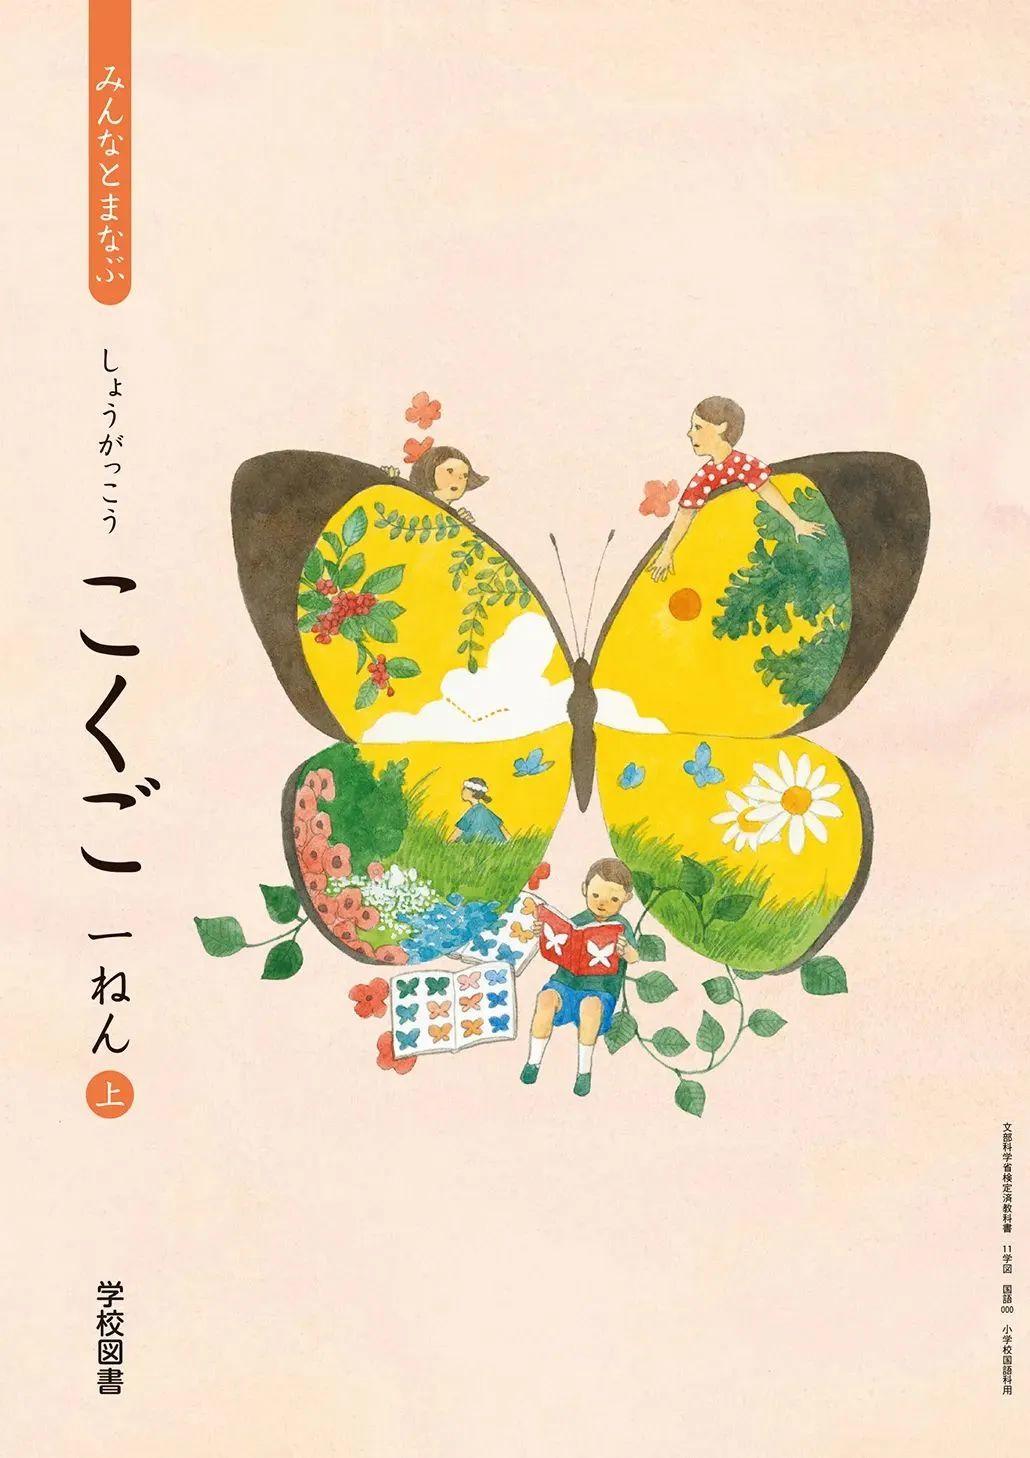 日本中小学生教科书封面设计,太美了吧! 第6张